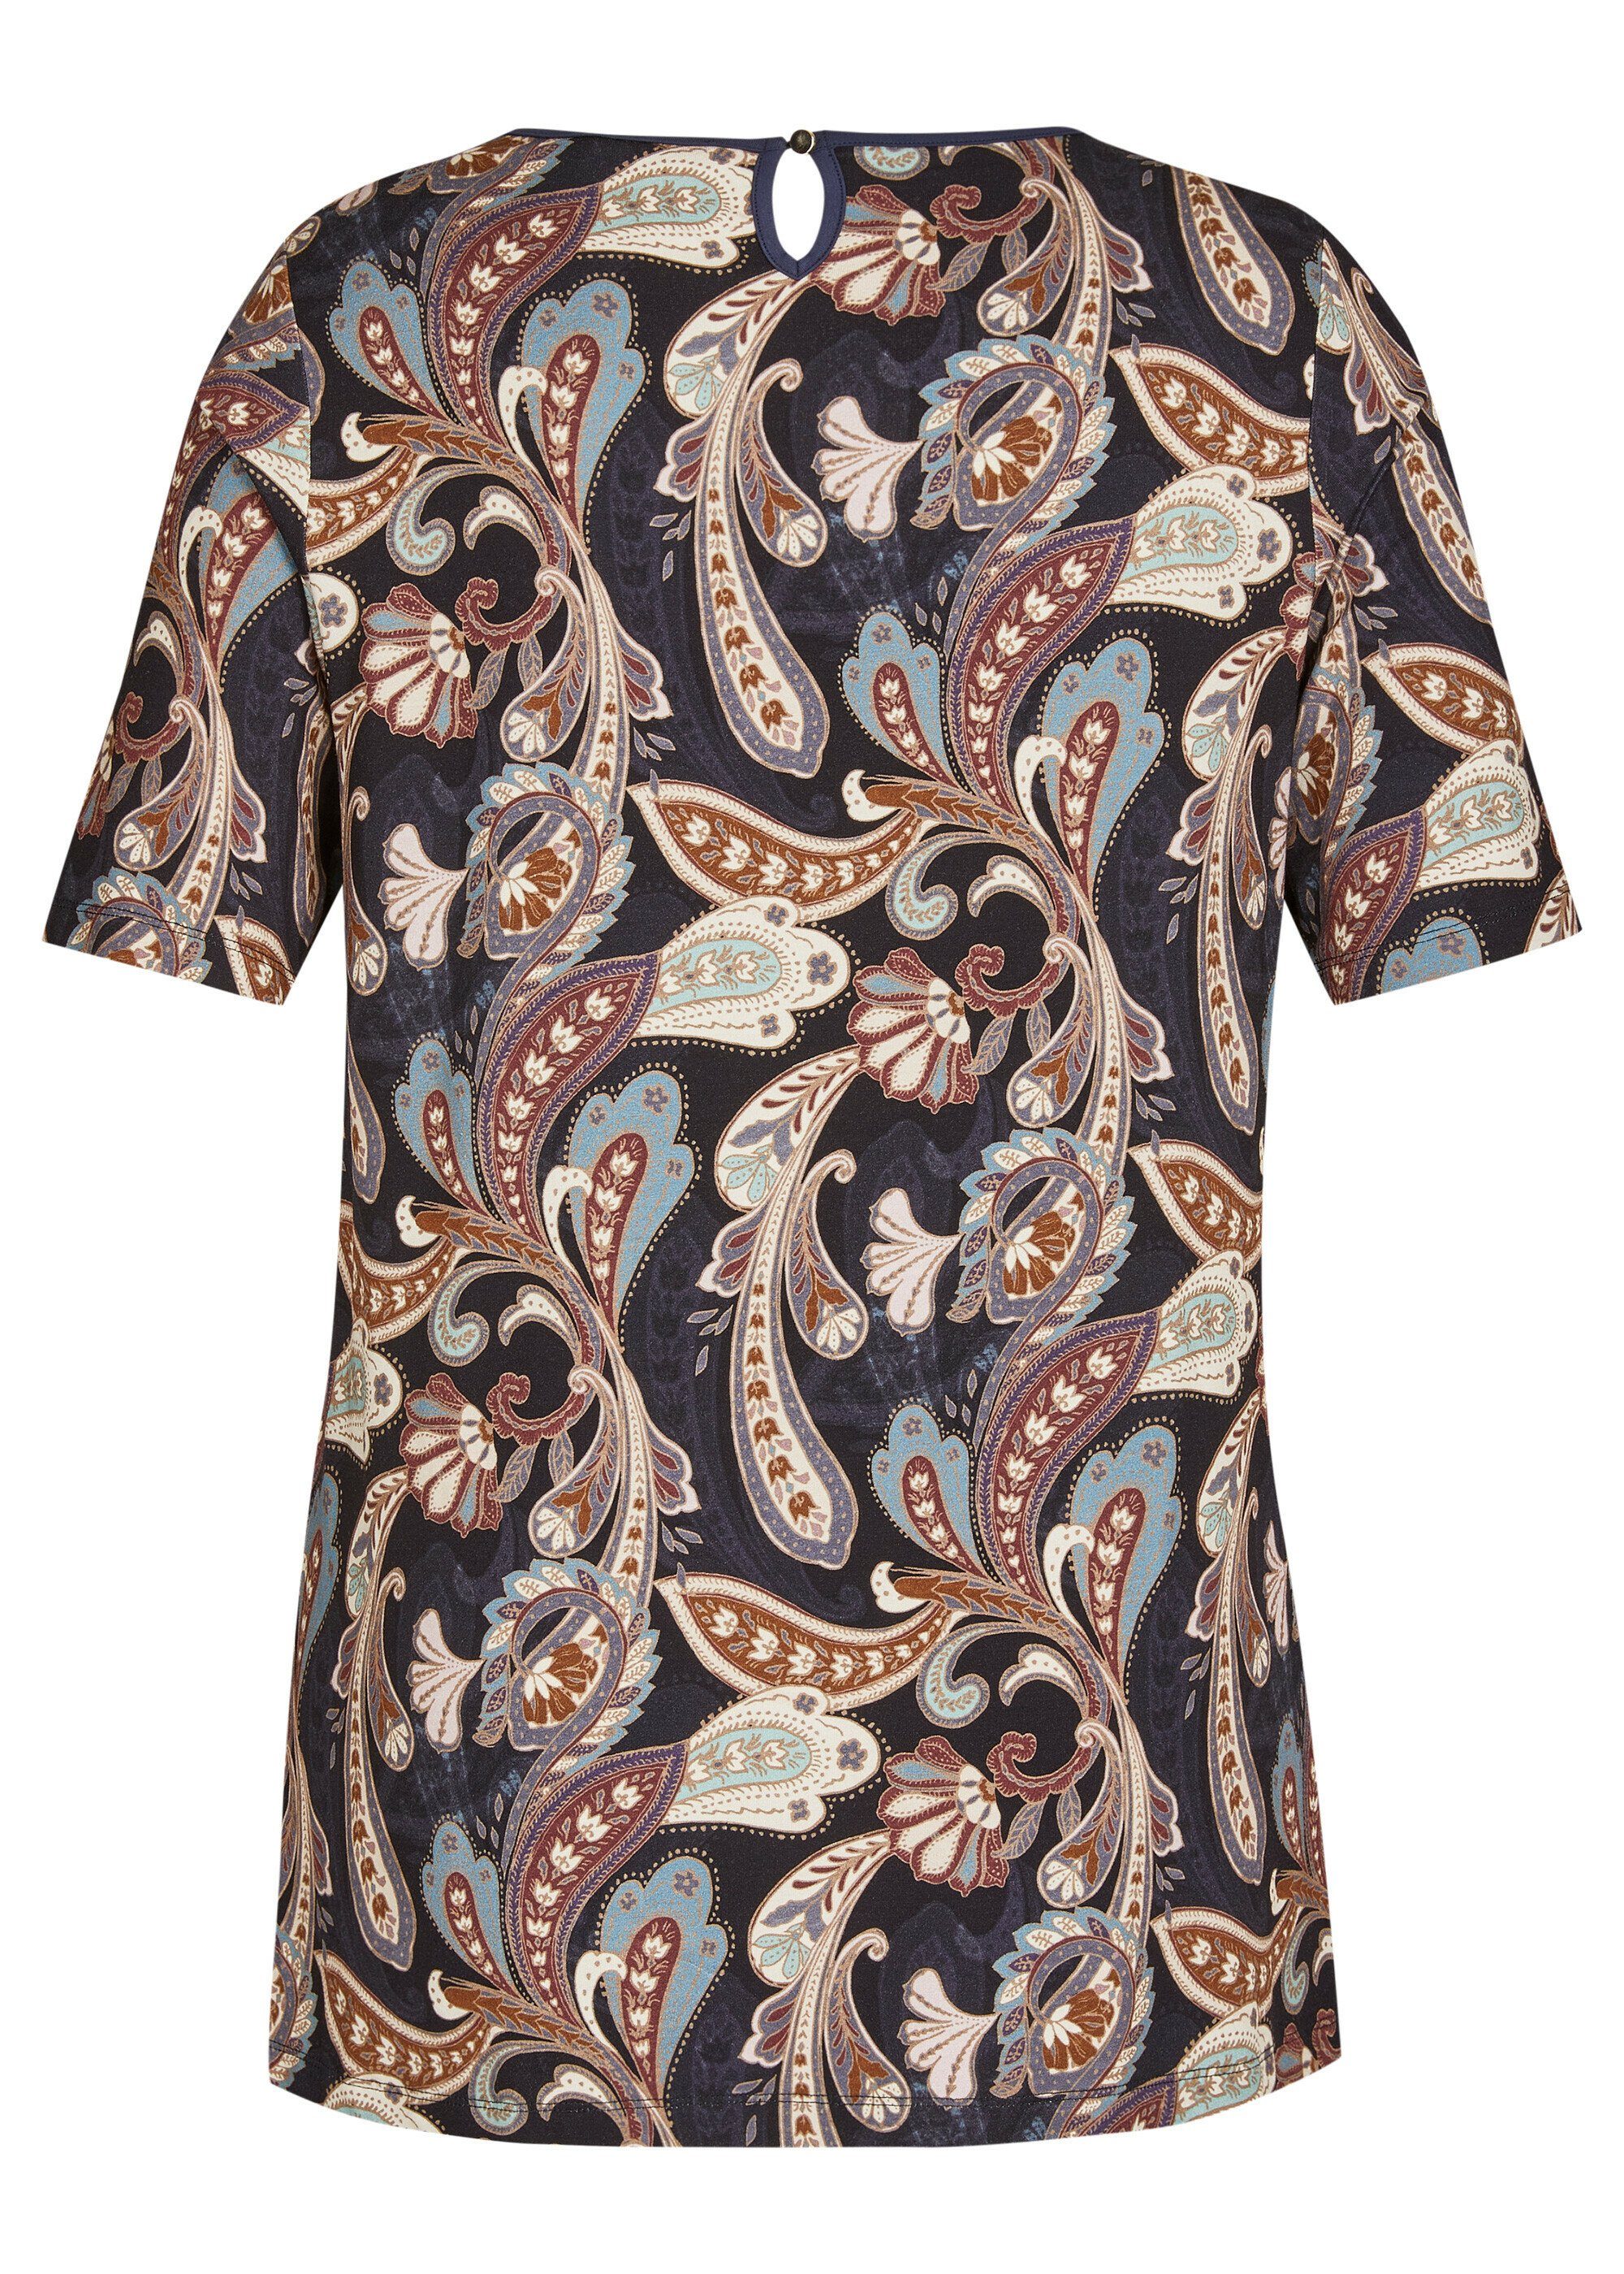 Print-Shirt FRAPP orientalischem Romantisches T-Shirt mit Muster